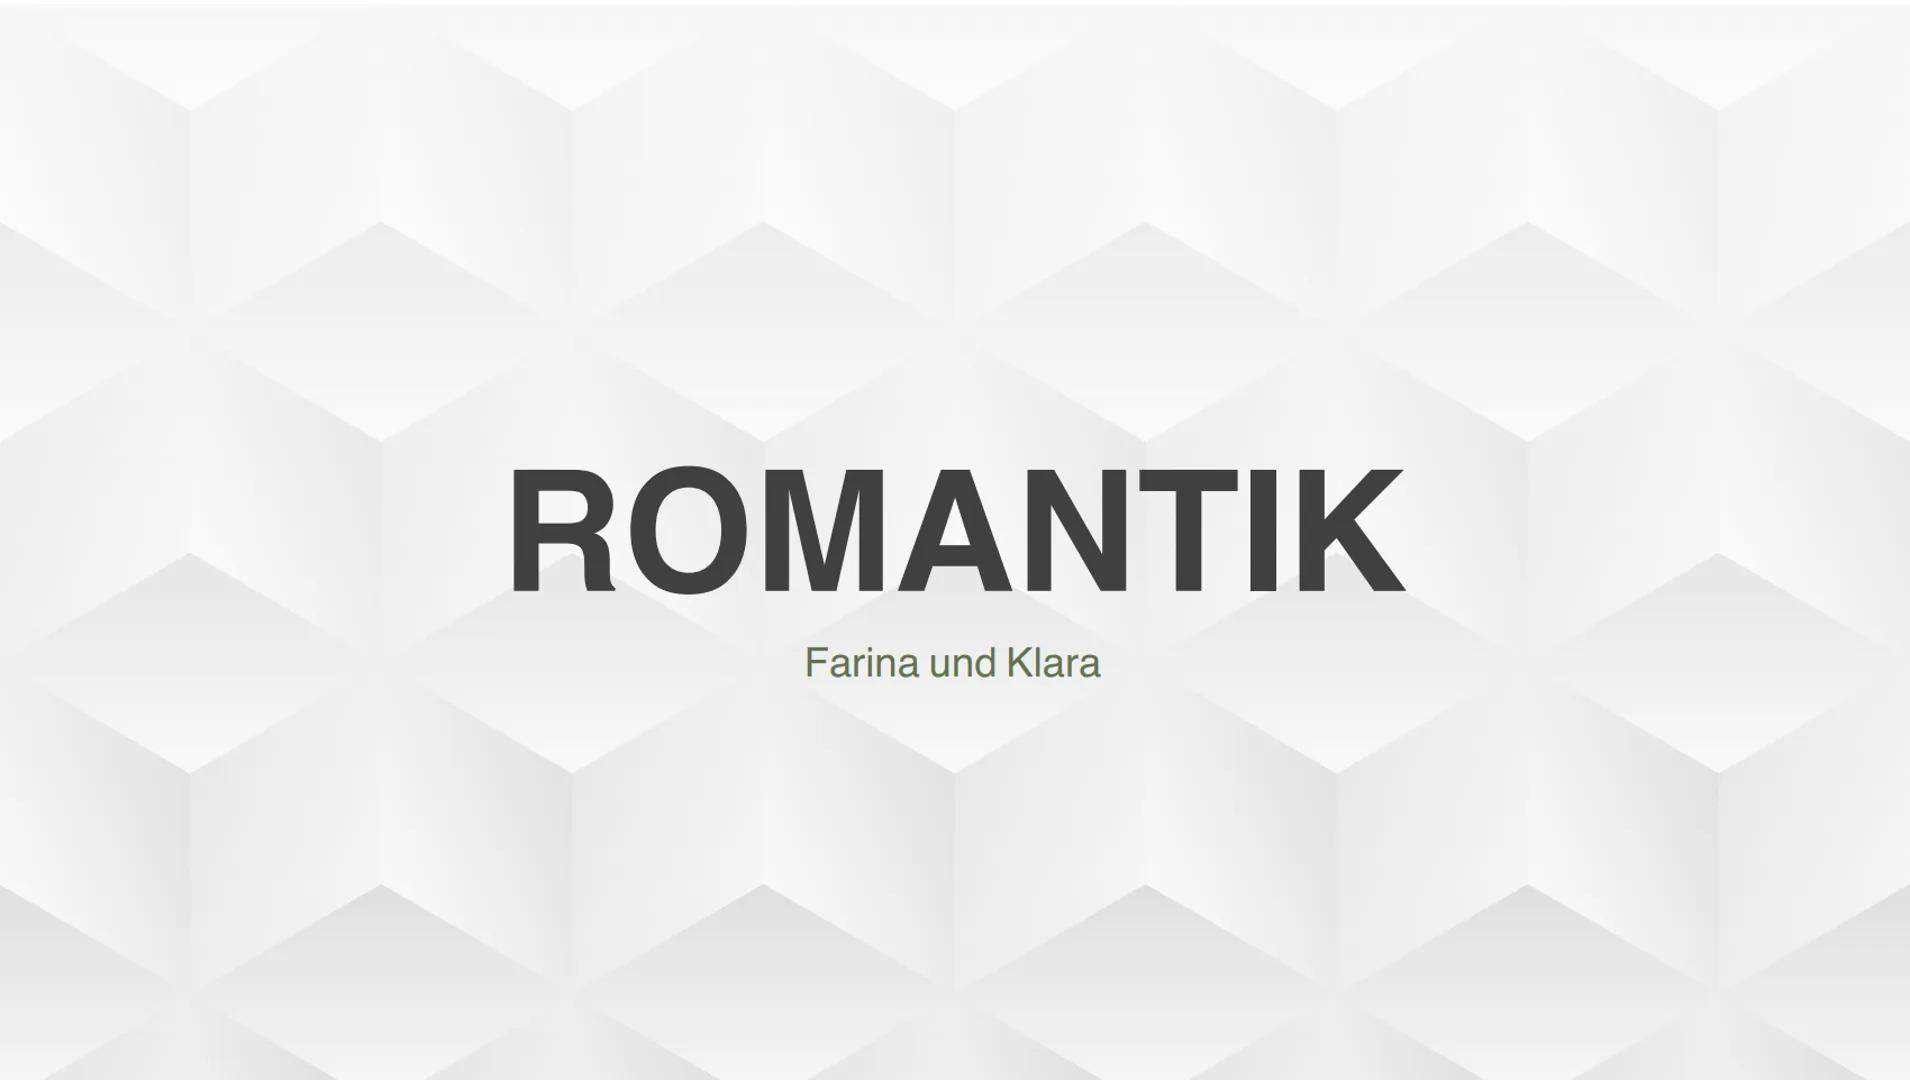 ROMANTIK
Farina und Klara Inhaltsverzeichnis
1. Allgemein
1.1 zeitliche Einordnung
1.2 Begriffserklärung
1.3 Merkmale
2. Historischer Hinter